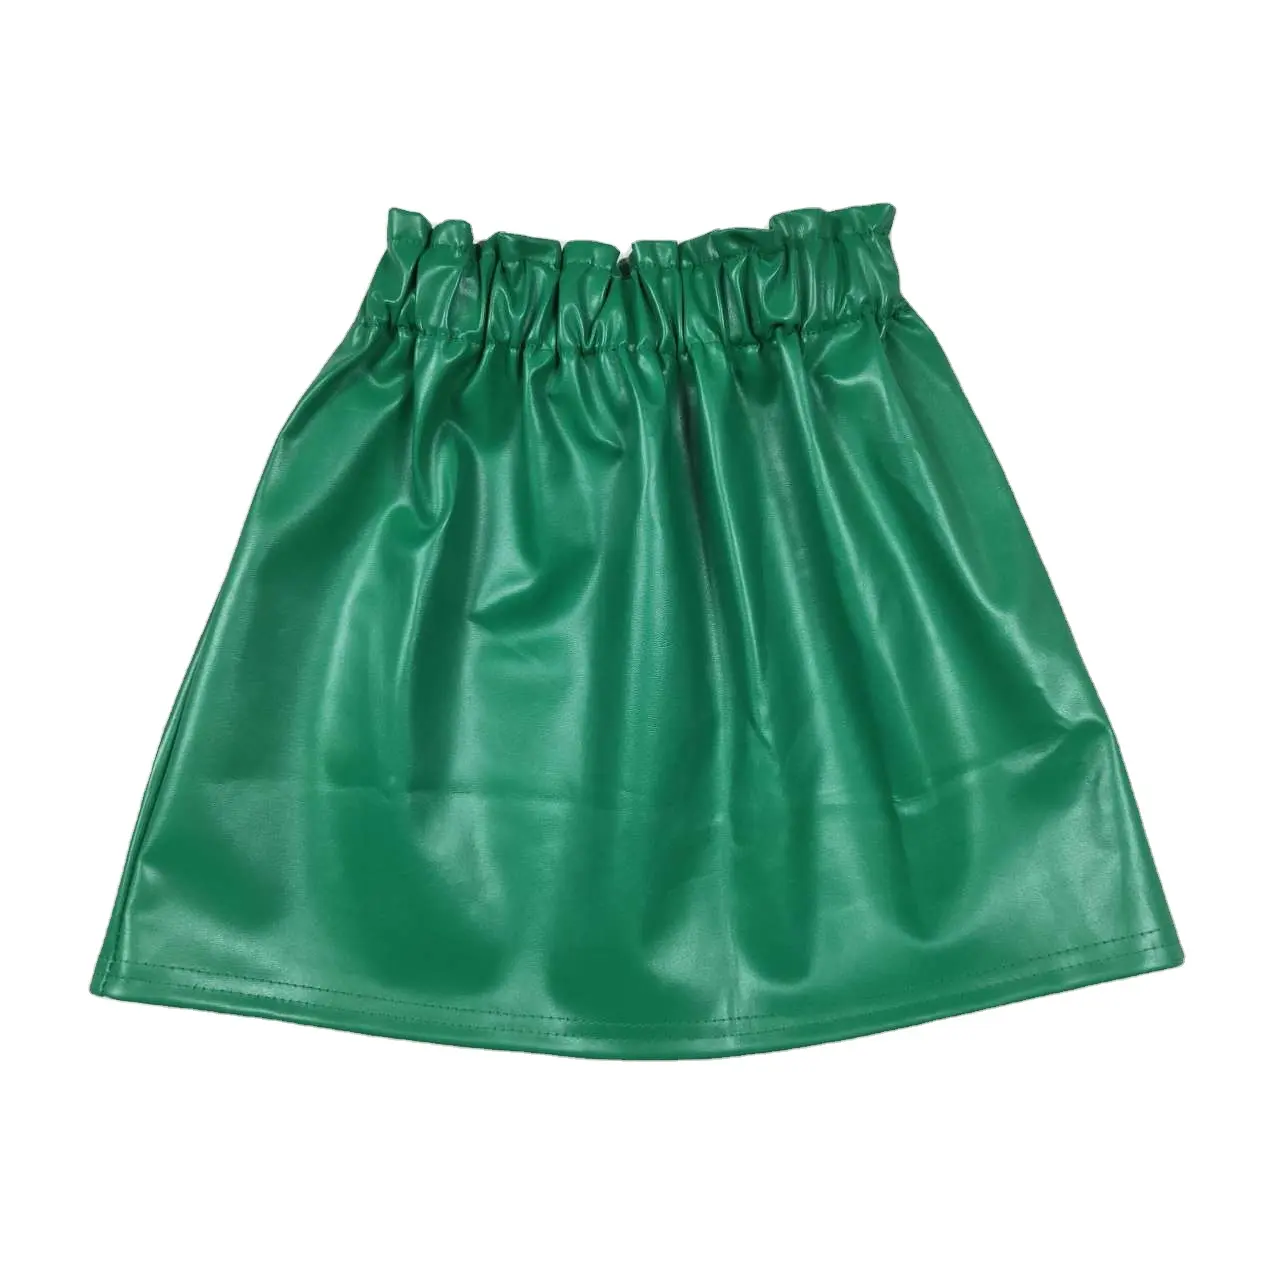 تنورة أطفال عالية الجودة للبنات تنورة جلدية خضراء فستان للفتيات تنورة قصيرة أنيقة